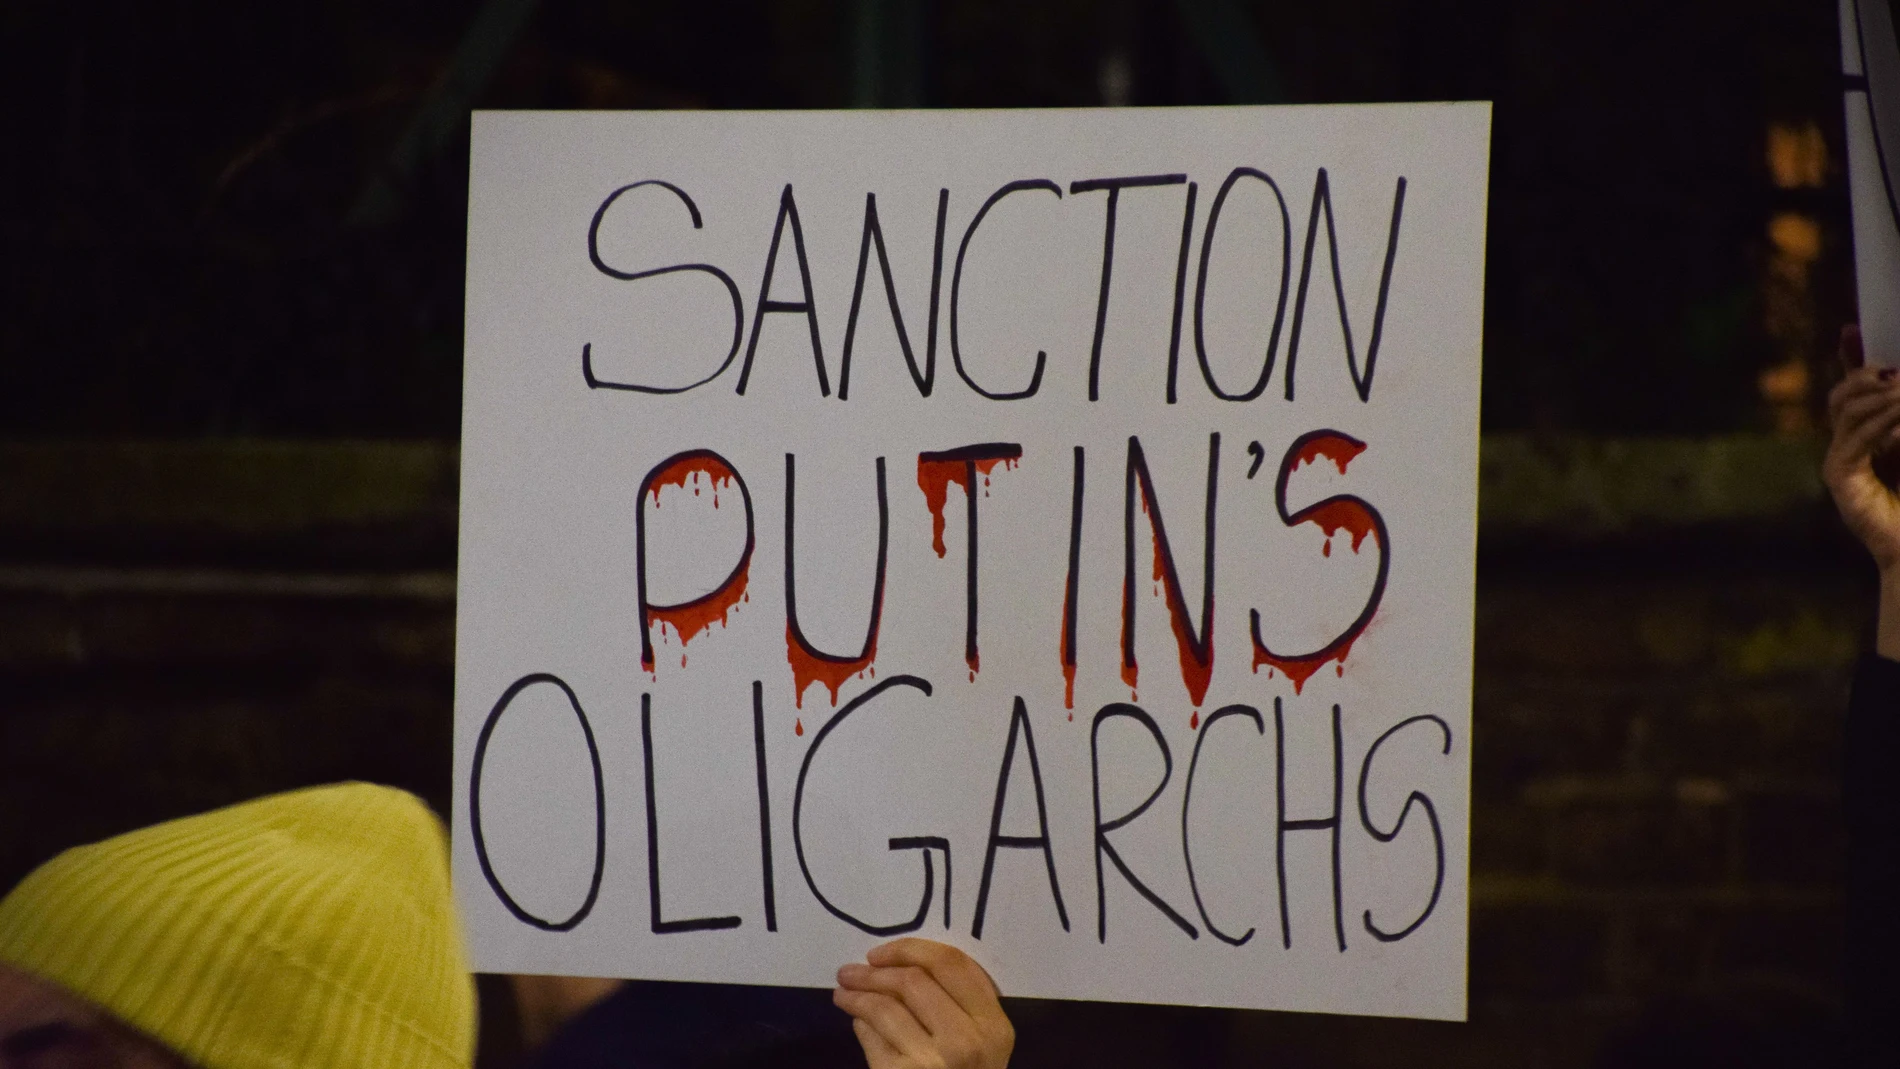 Un manifestante sostiene una pancarta "Sancionar a los oligarcas de Putin". Manifestantes reunidos frente a la embajada rusa en Londres en protesta por la invasión rusa de Ucrania. 05/03/2022